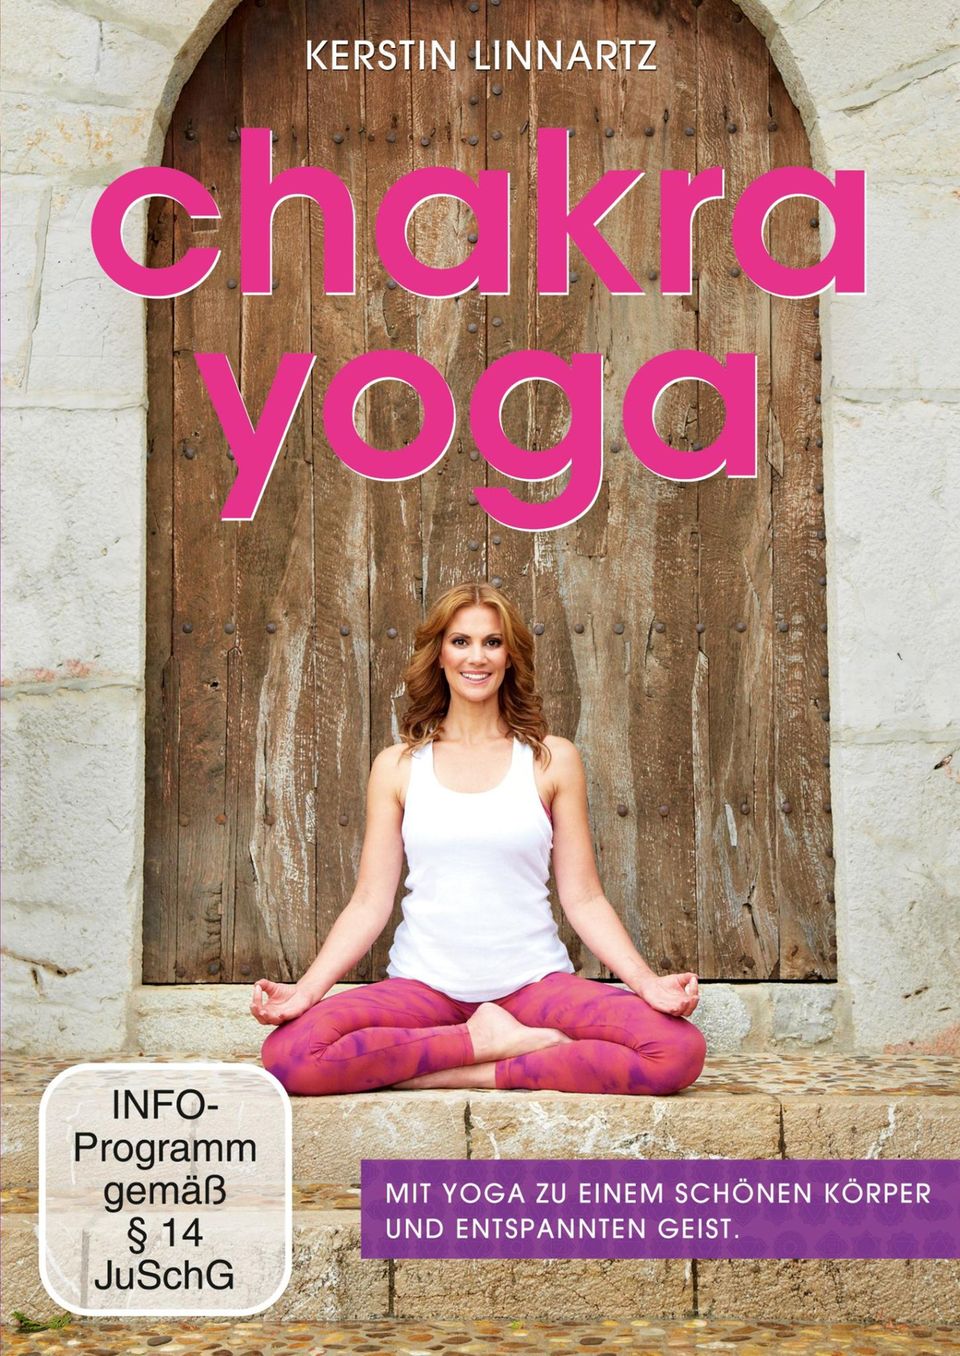 Seit dem 26. Feburar 2016 ist die DVD "Chakra Yoga" von Kerstin Linnartz im Handel.